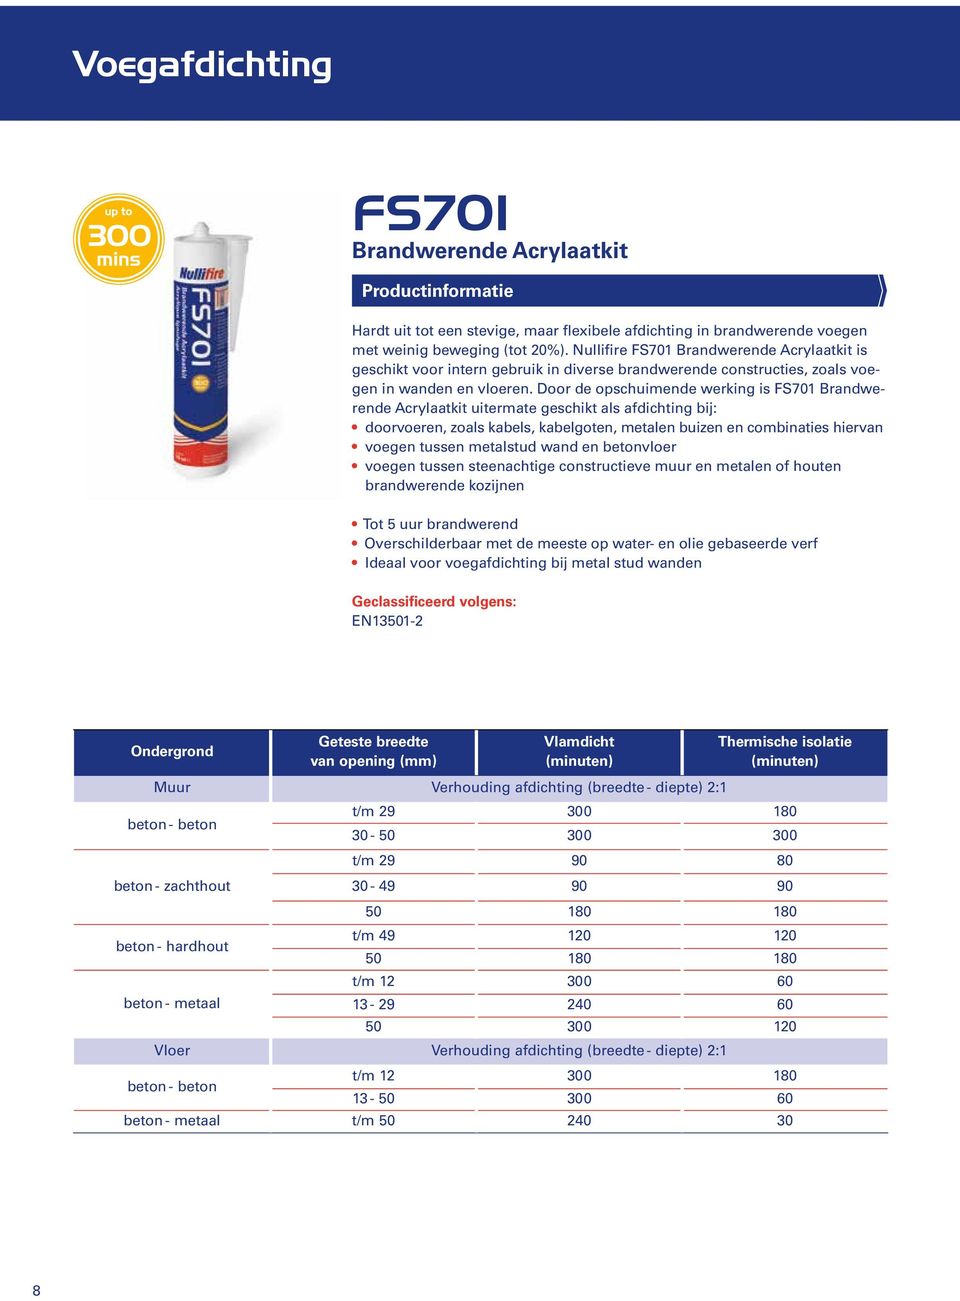 Door de opschuimende werking is FS701 Brandwerende Acrylaatkit uitermate geschikt als afdichting bij: doorvoeren, zoals kabels, kabelgoten, metalen buizen en combinaties hiervan voegen tussen